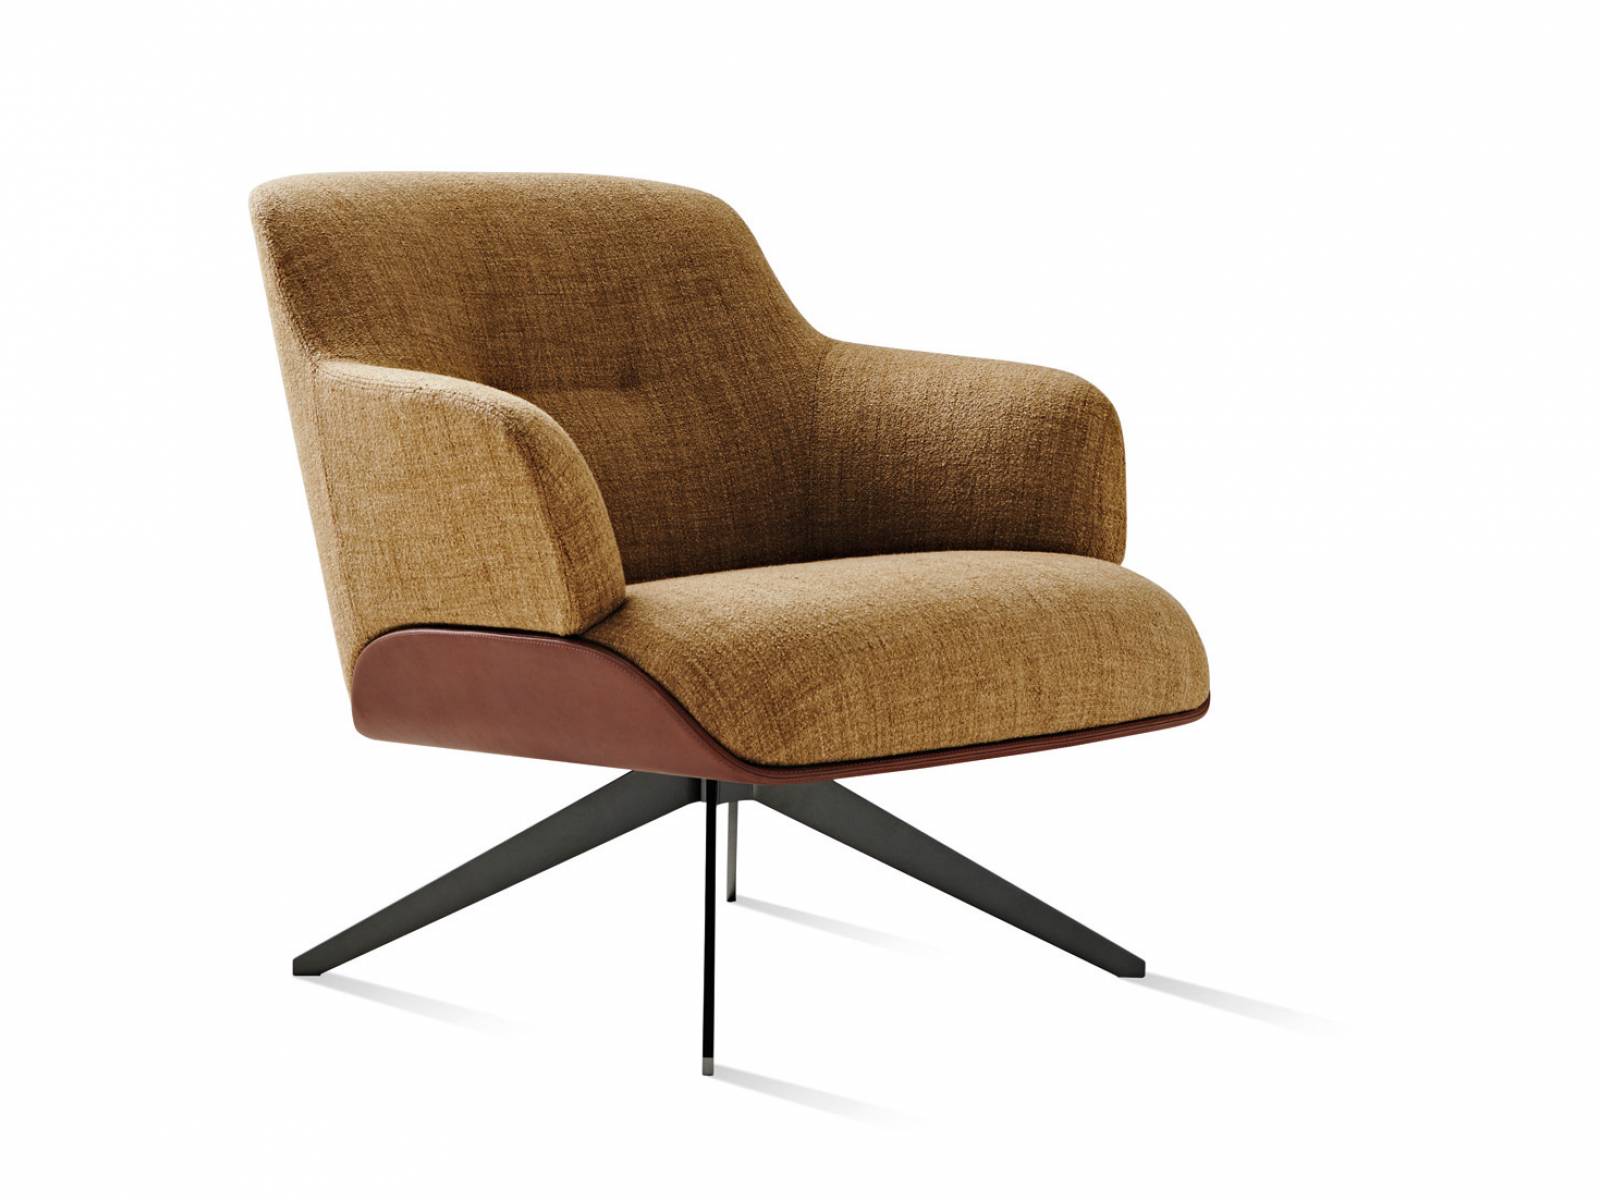 «Kensington» ist ein Sessel mit weich gepolsterter, grosszügiger Sitzfläche. Neben der Ausführung mit einer Aussenschale aus Leder und einer stoffgepolsteren Innenschale hat Designer Rodolfo Dordoni auch ein Modell komplett aus Leder entworfen. Molteni.